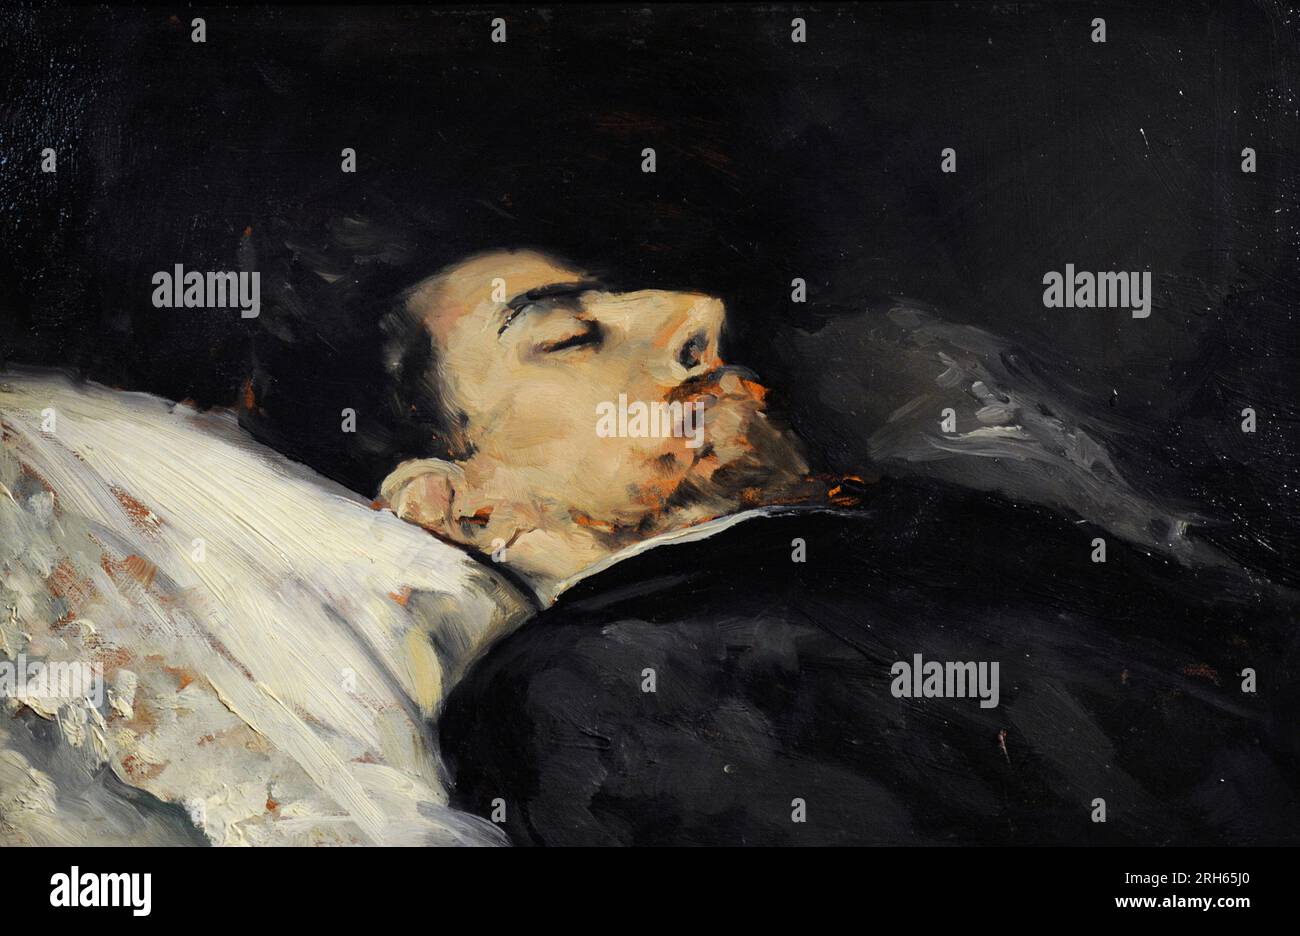 Gustavo Adolfo Becquer (1836-1870). Spanischer Dichter. Becquer auf seinem Sterbebett, 1870. Gemälde von Vicente Palmaroli (1834-1896). Museum der Romantik. Madrid, Spanien. Stockfoto